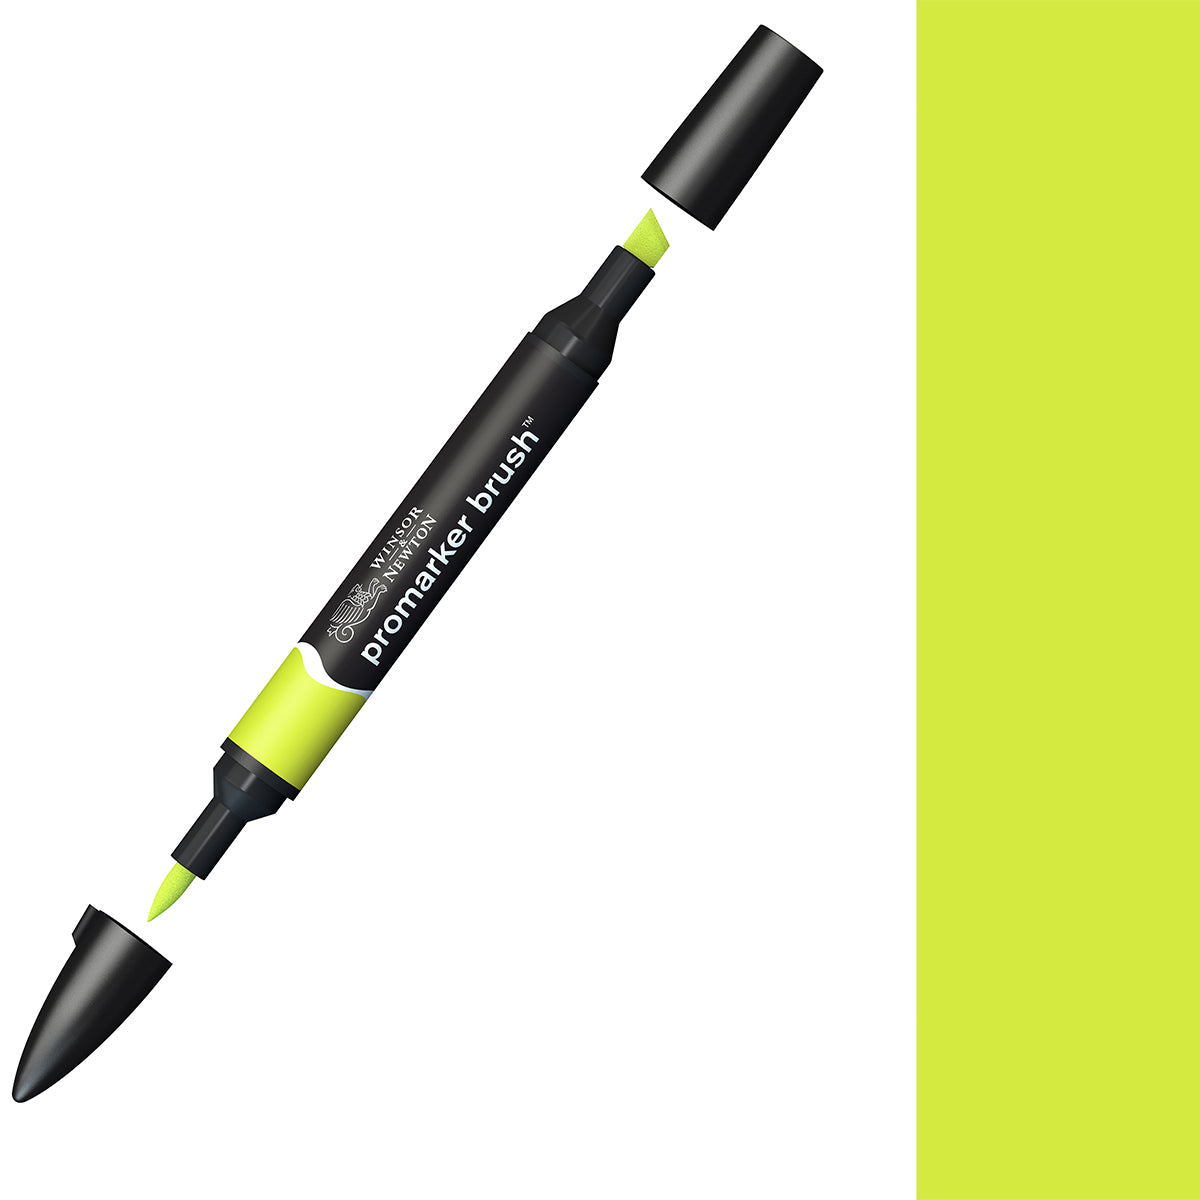 Winsor & Newton - Promarker Brush - Lime Green - BrushMarker